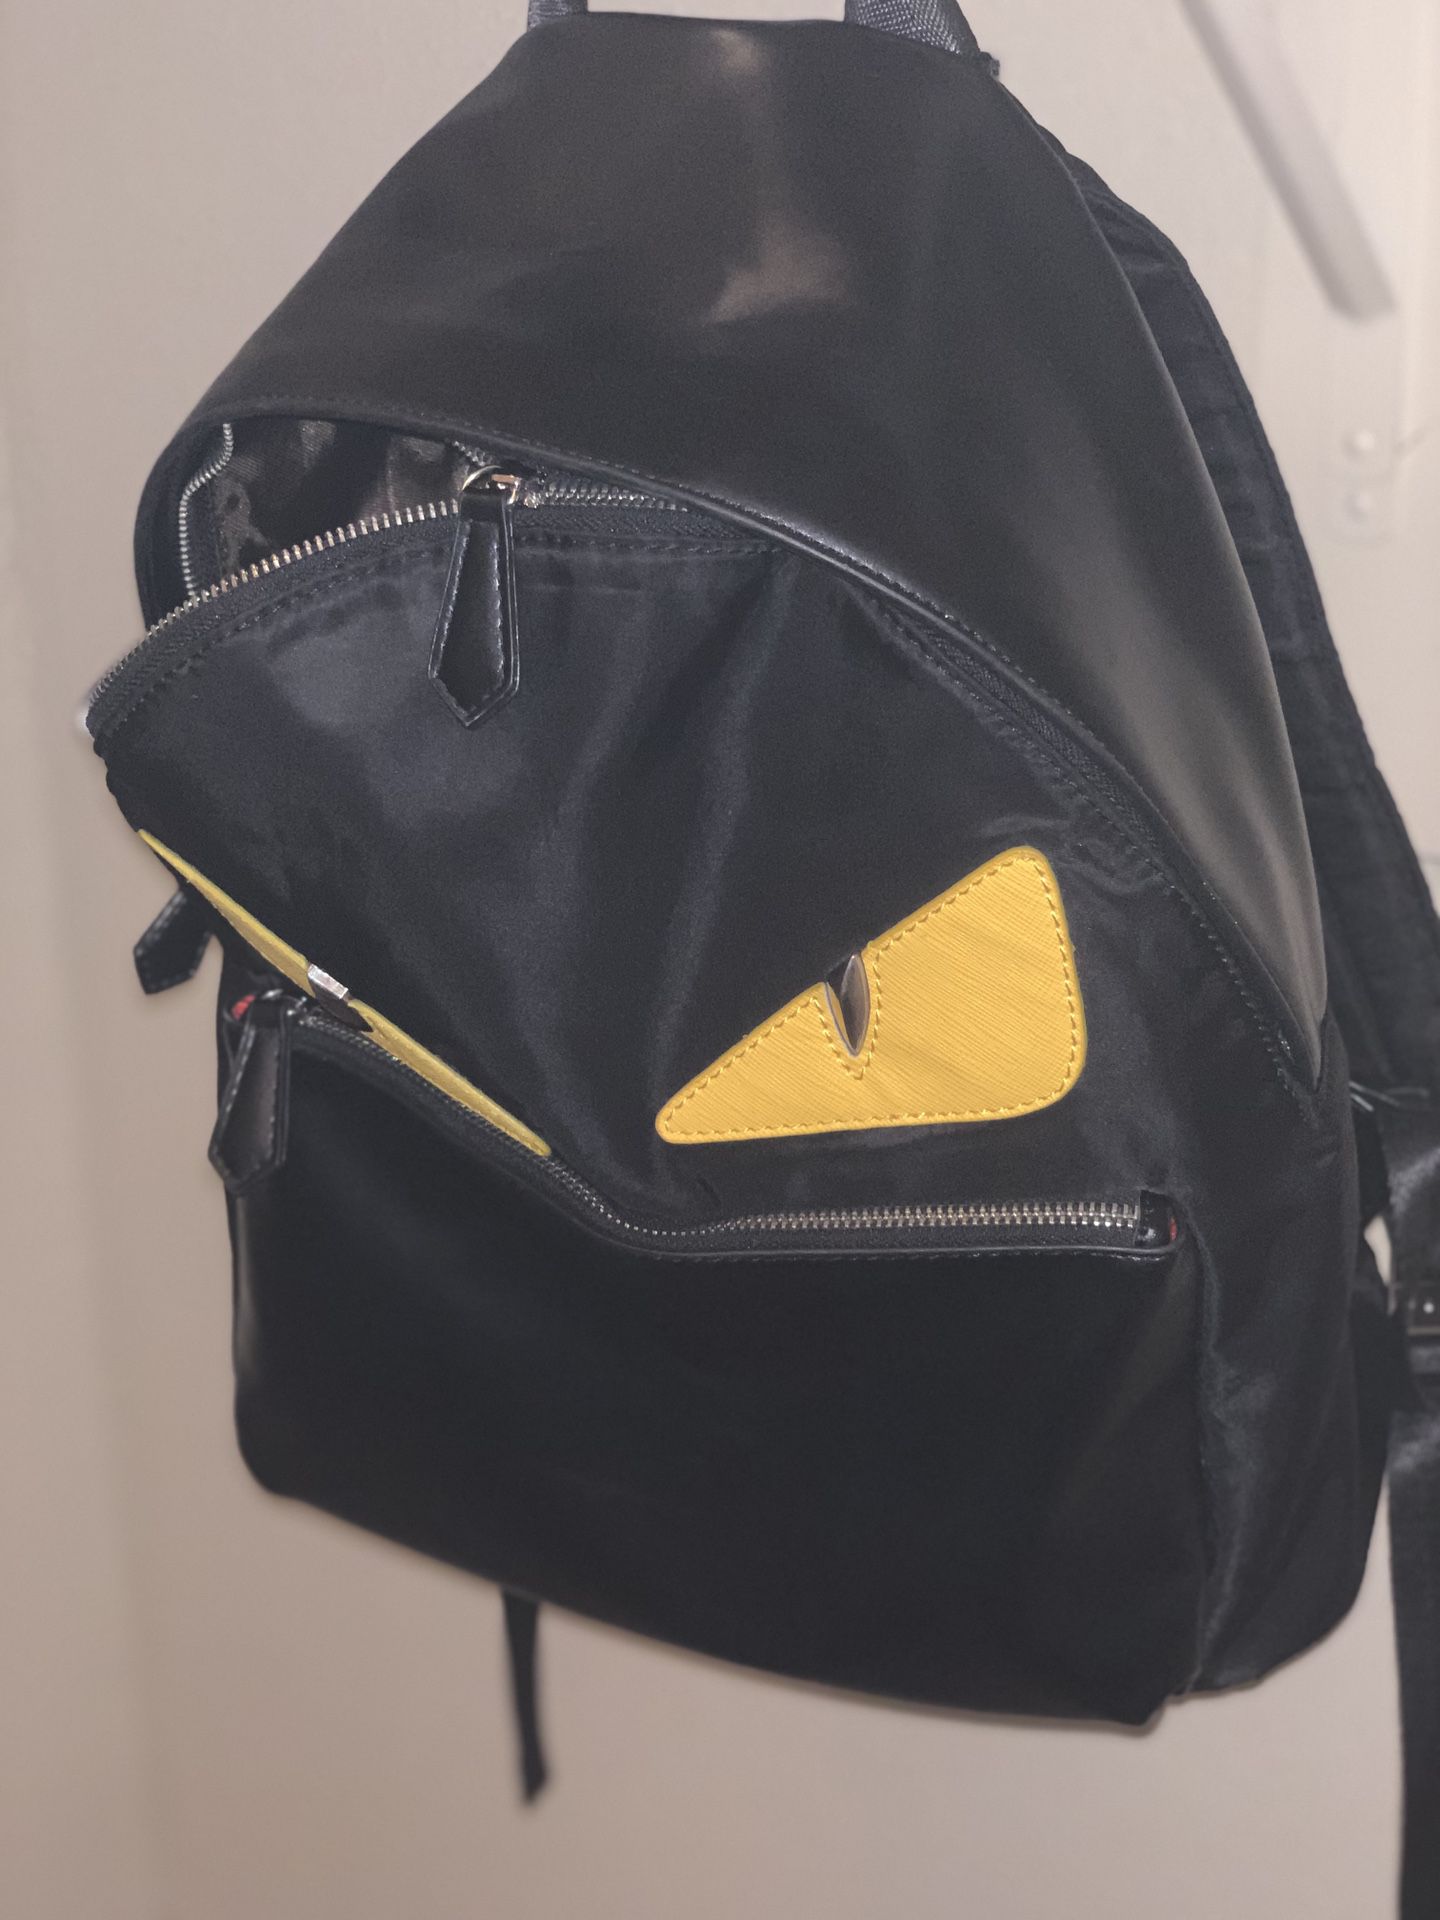 Fendi backpack brand new